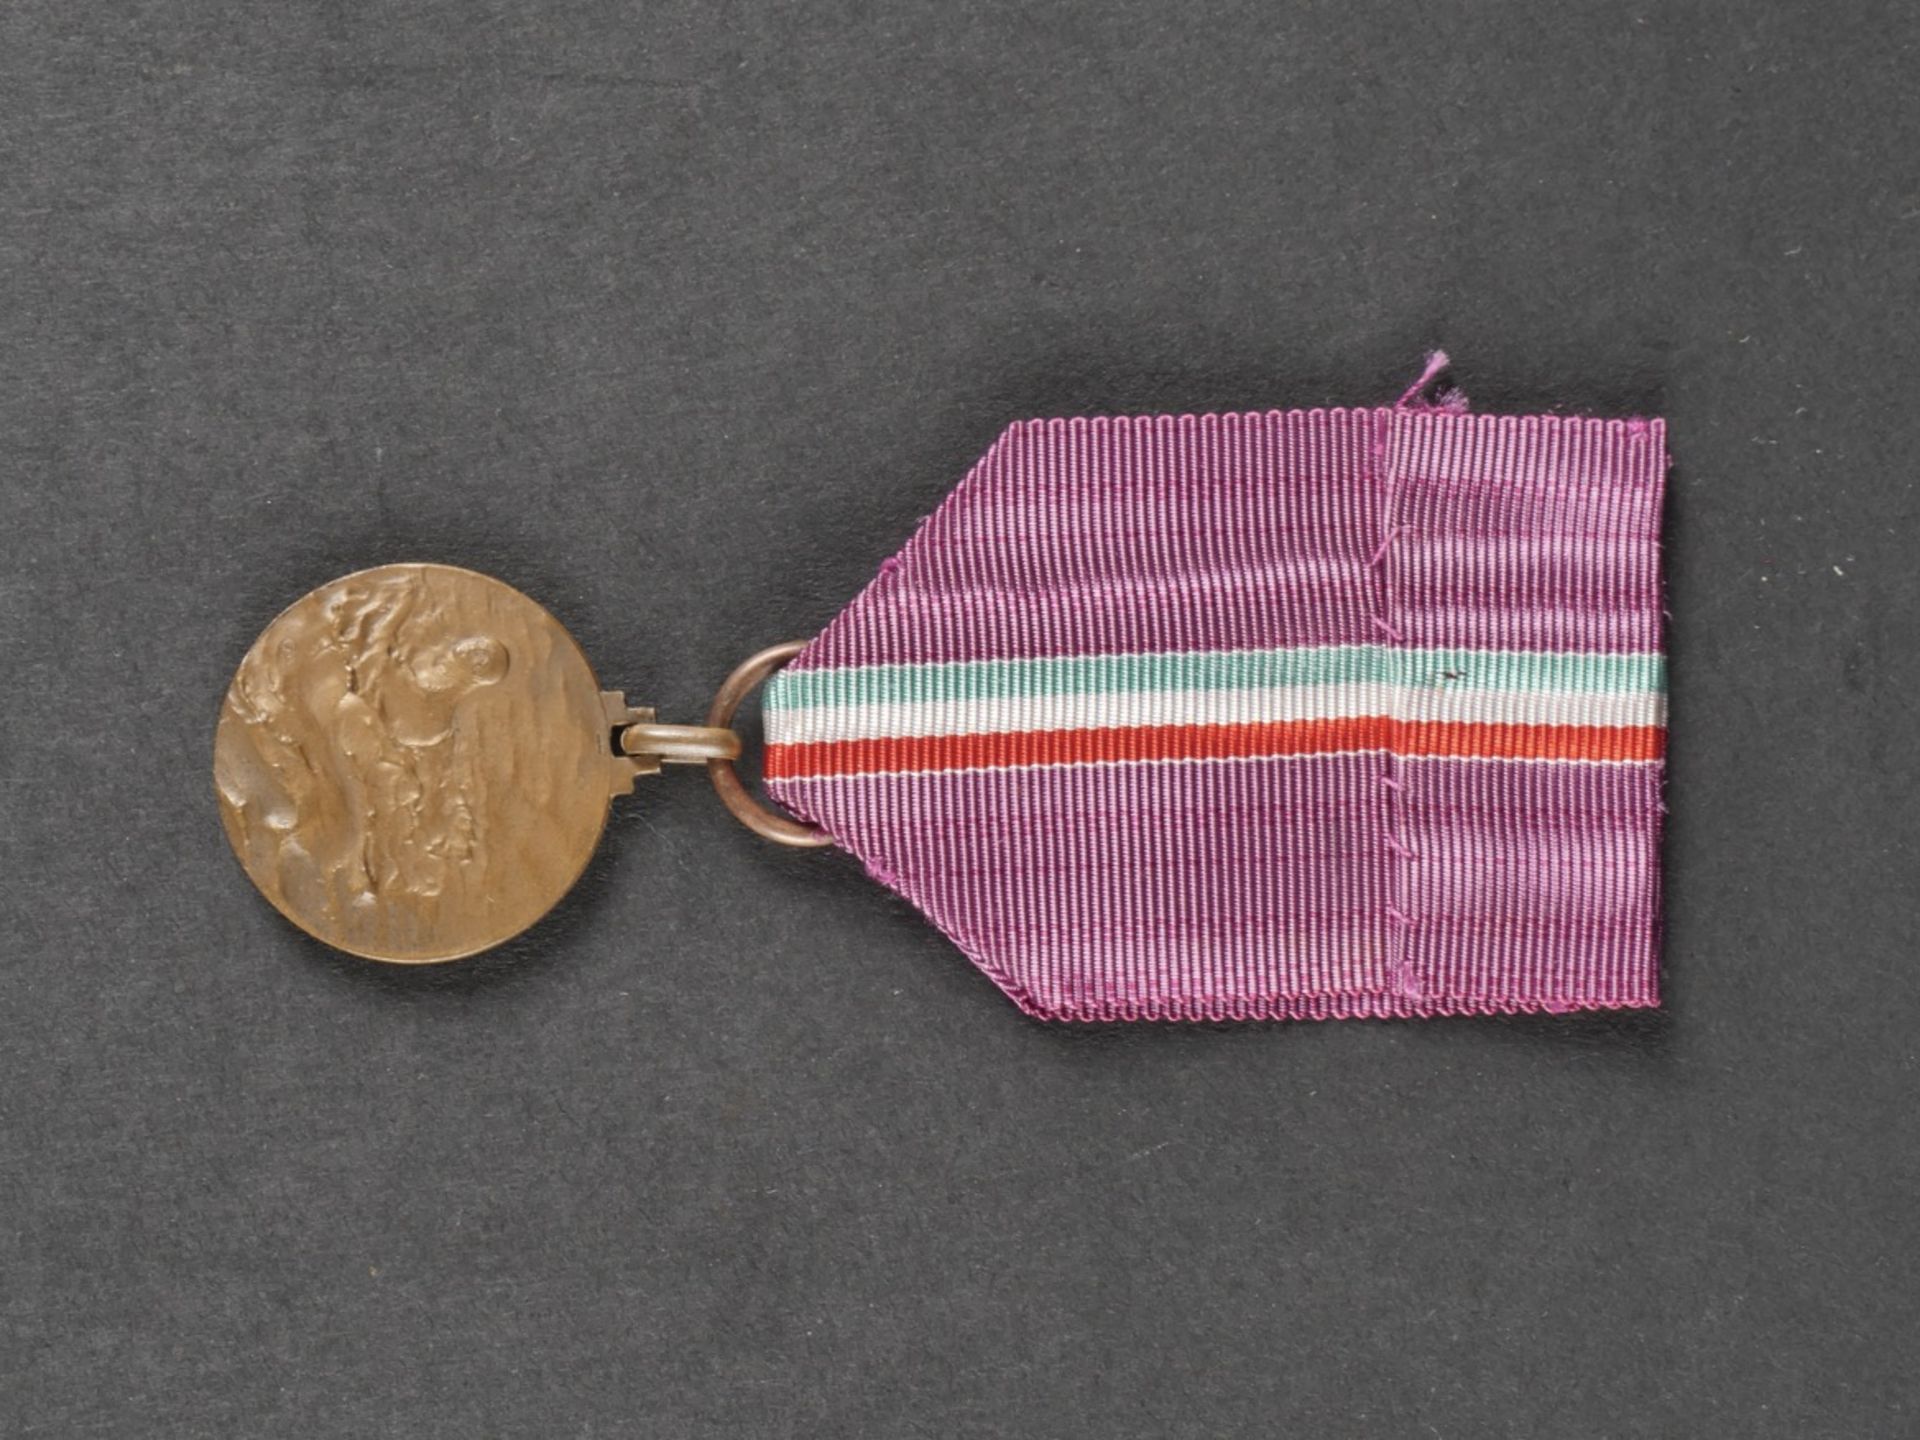 Glaive de recompense pour le 100 metres dos des championnats sportifs de la jeunesse dEurope en 194 - Bild 19 aus 19